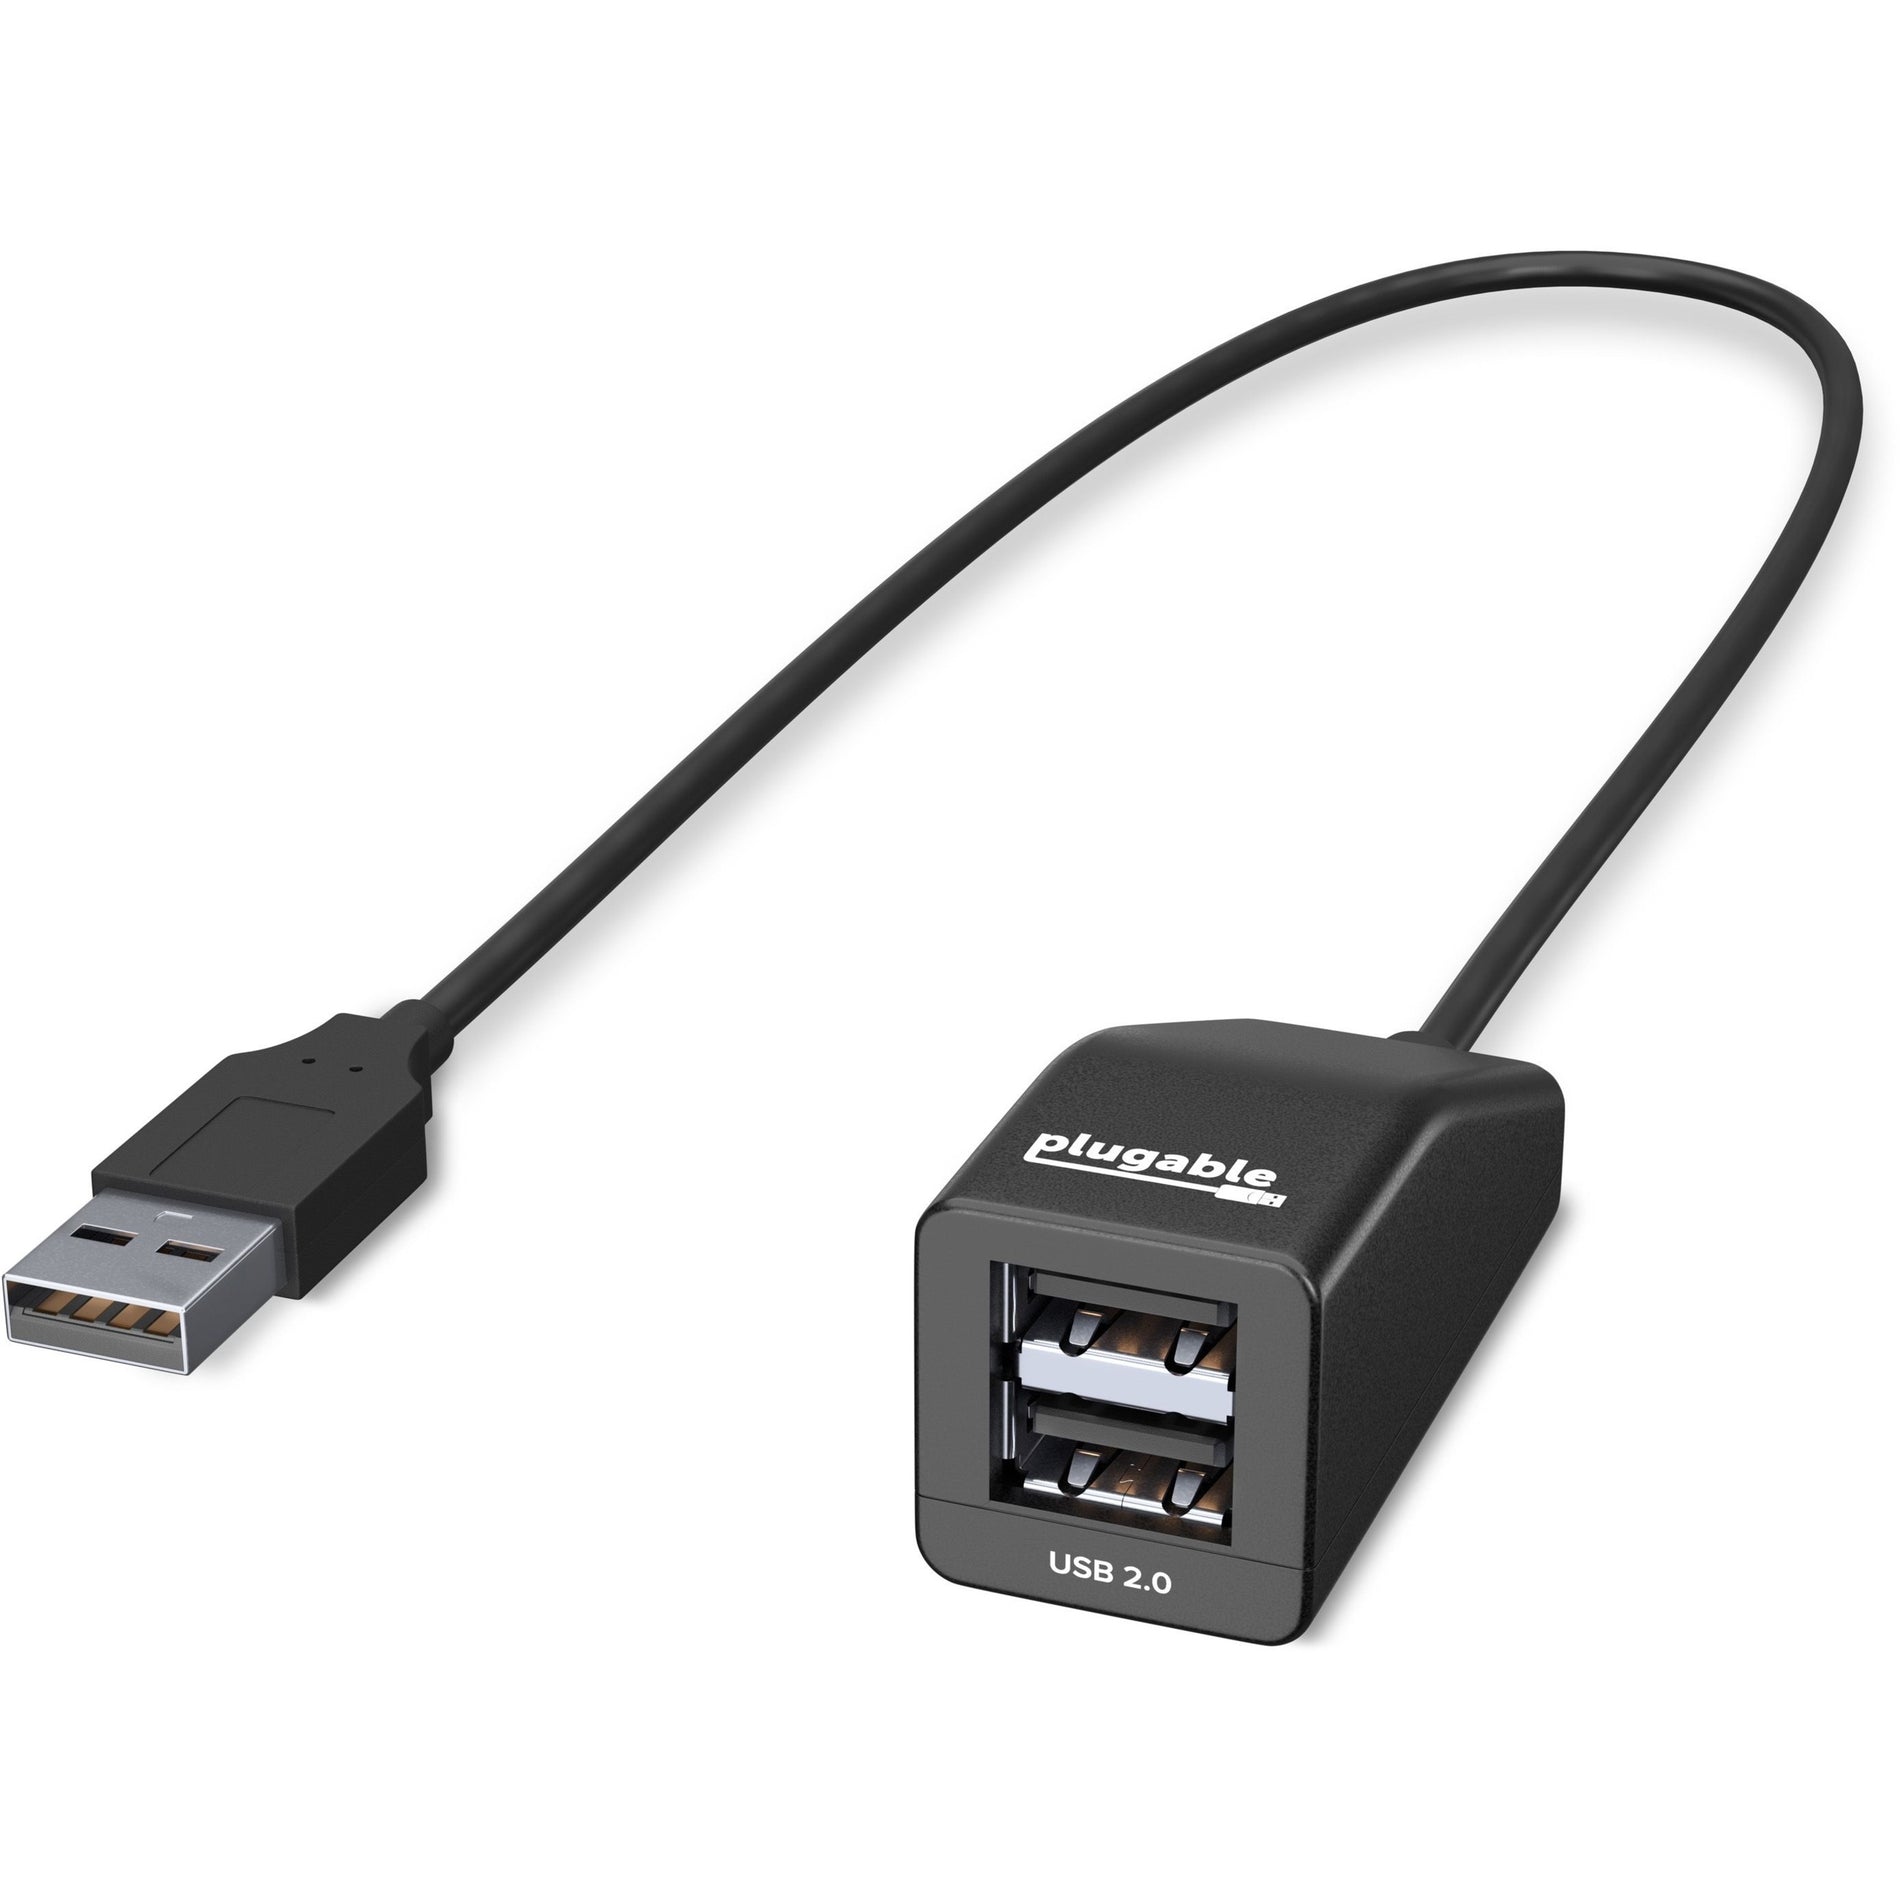 قابس متوافق مع USB2-2PORT USB 2.0 مع حزمتي بورت سرعة عالية مع شاشة شفافة مضغوطة للغاية ، توسيع سهل لأجهزتك. العلامة التجارية: (Plugable). اسم العلامة التجارية: (قابل).